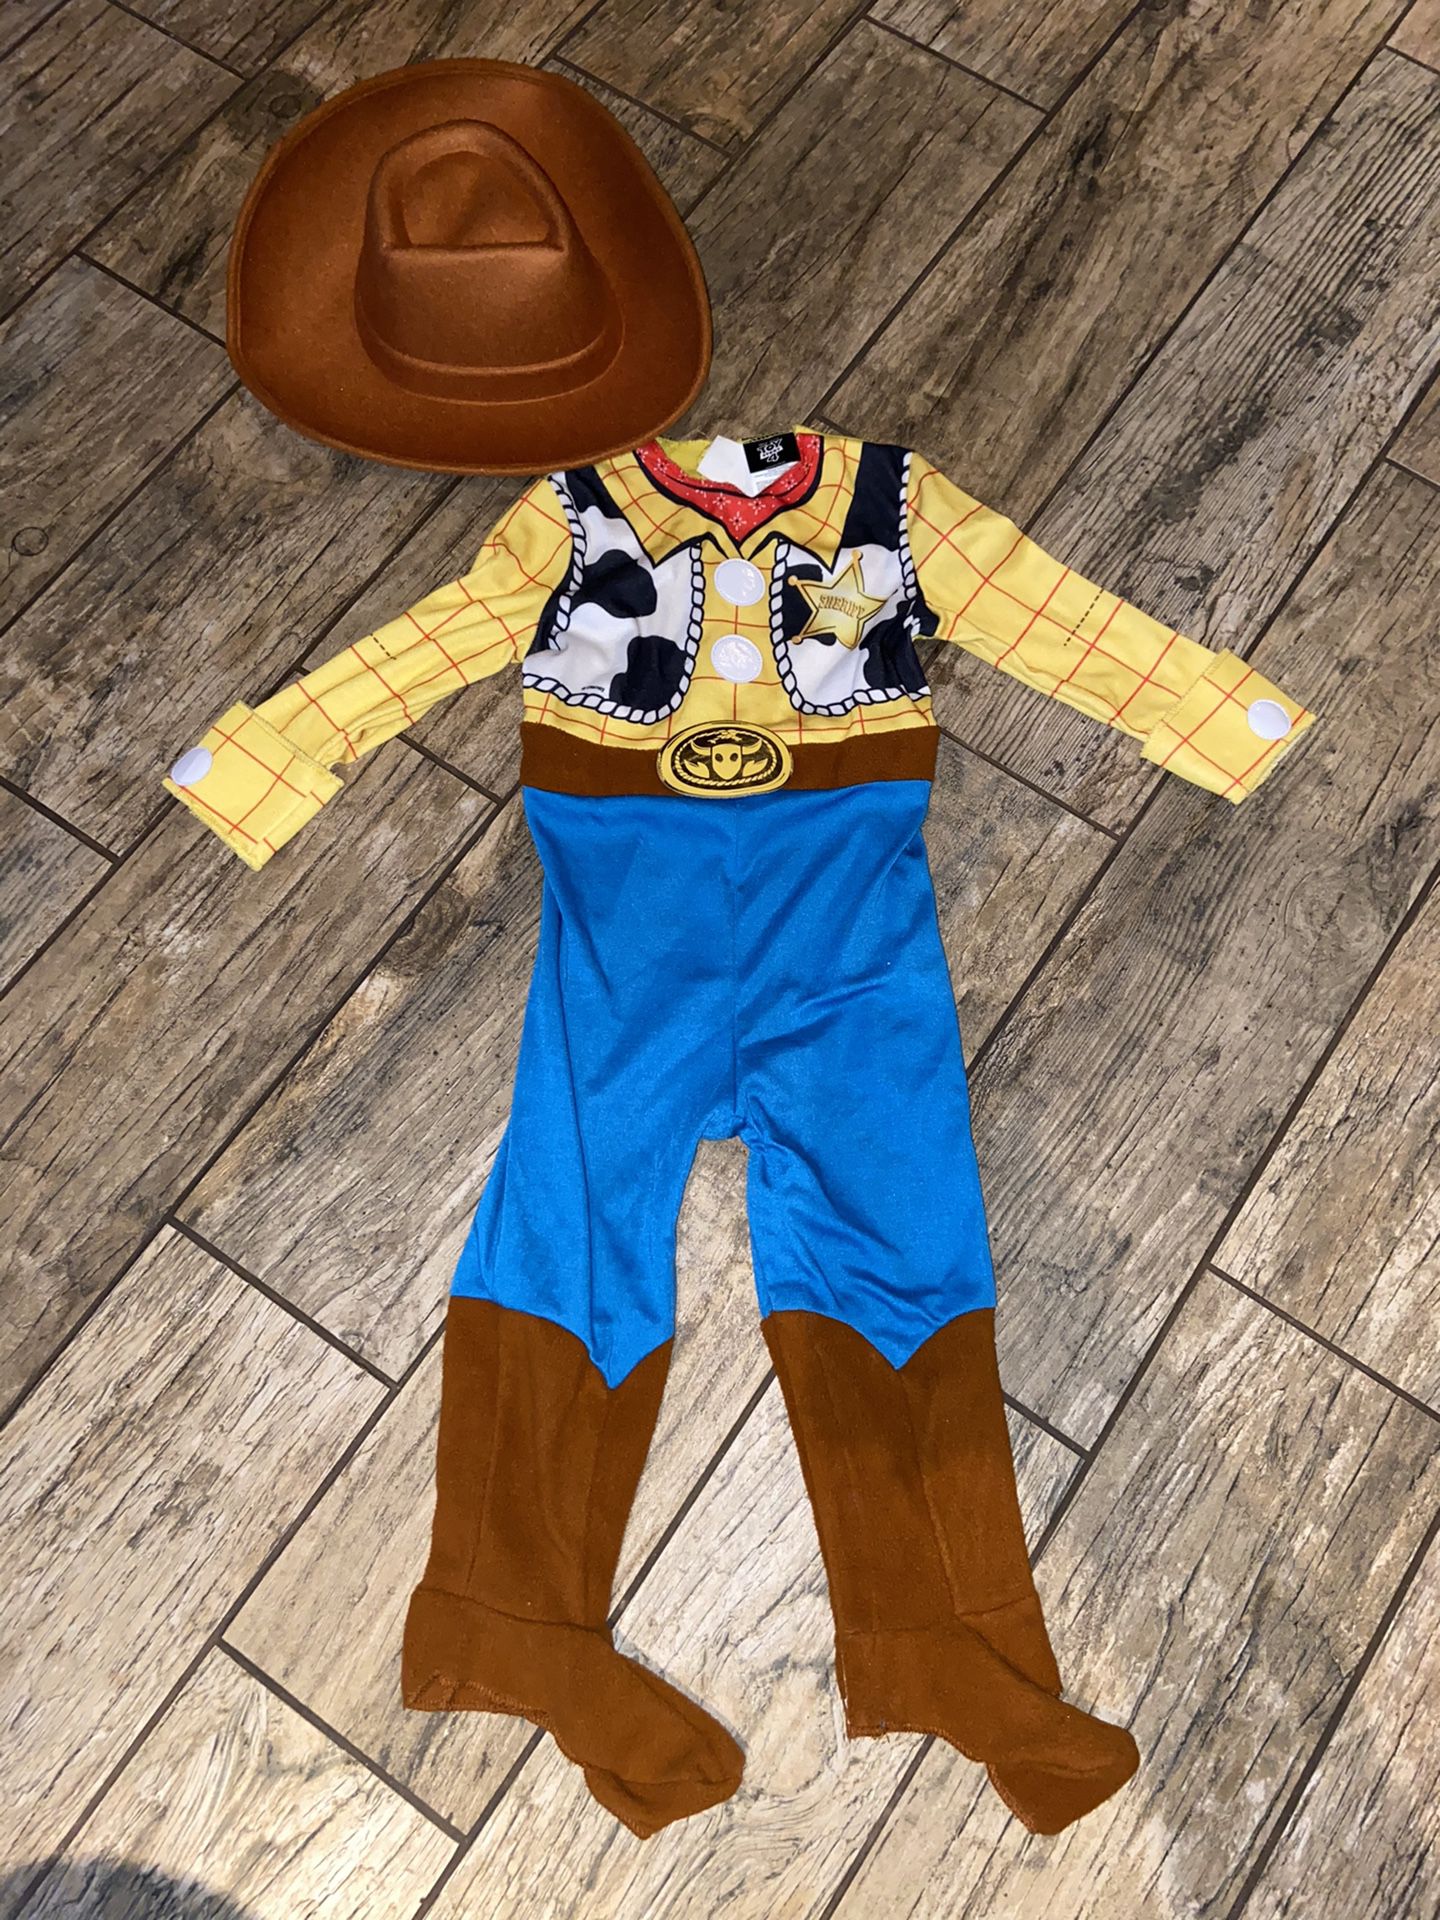 New kids Woody Sheriff dress up costume size 2T